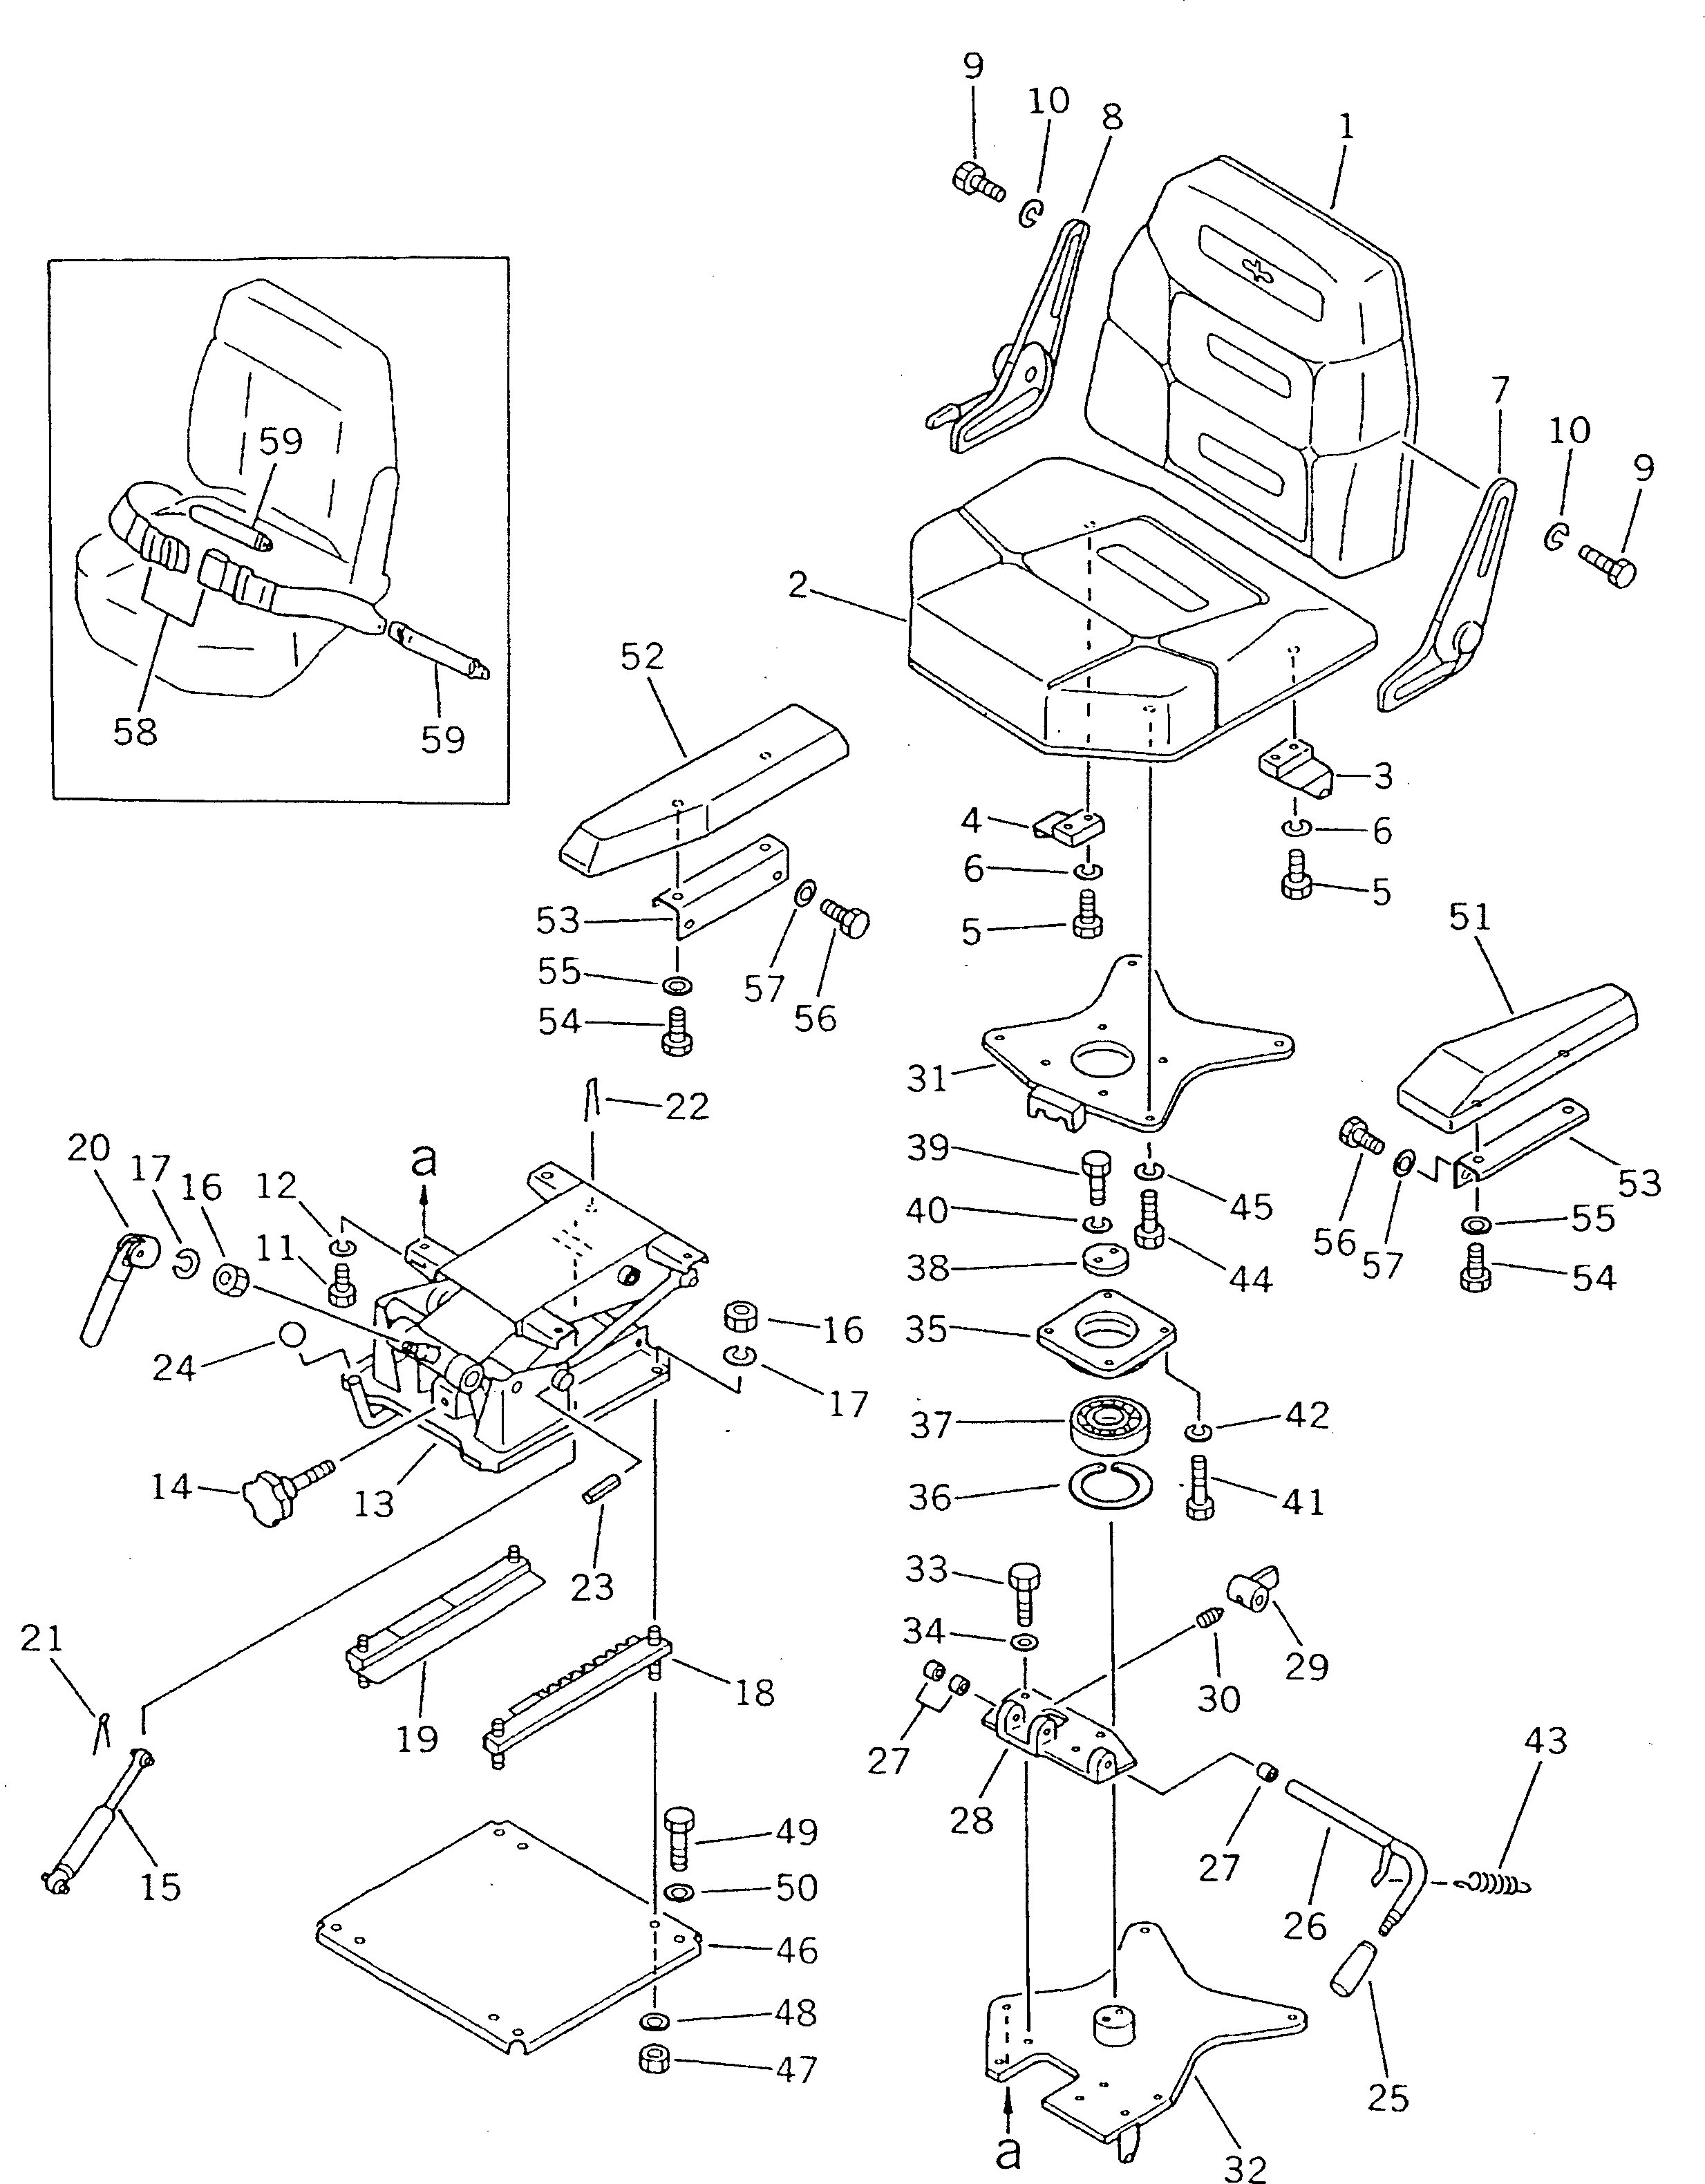 160. OPERATOR'S SEAT [5101] - Komatsu part D135A-2 S/N 10301-UP [d135a-2c]